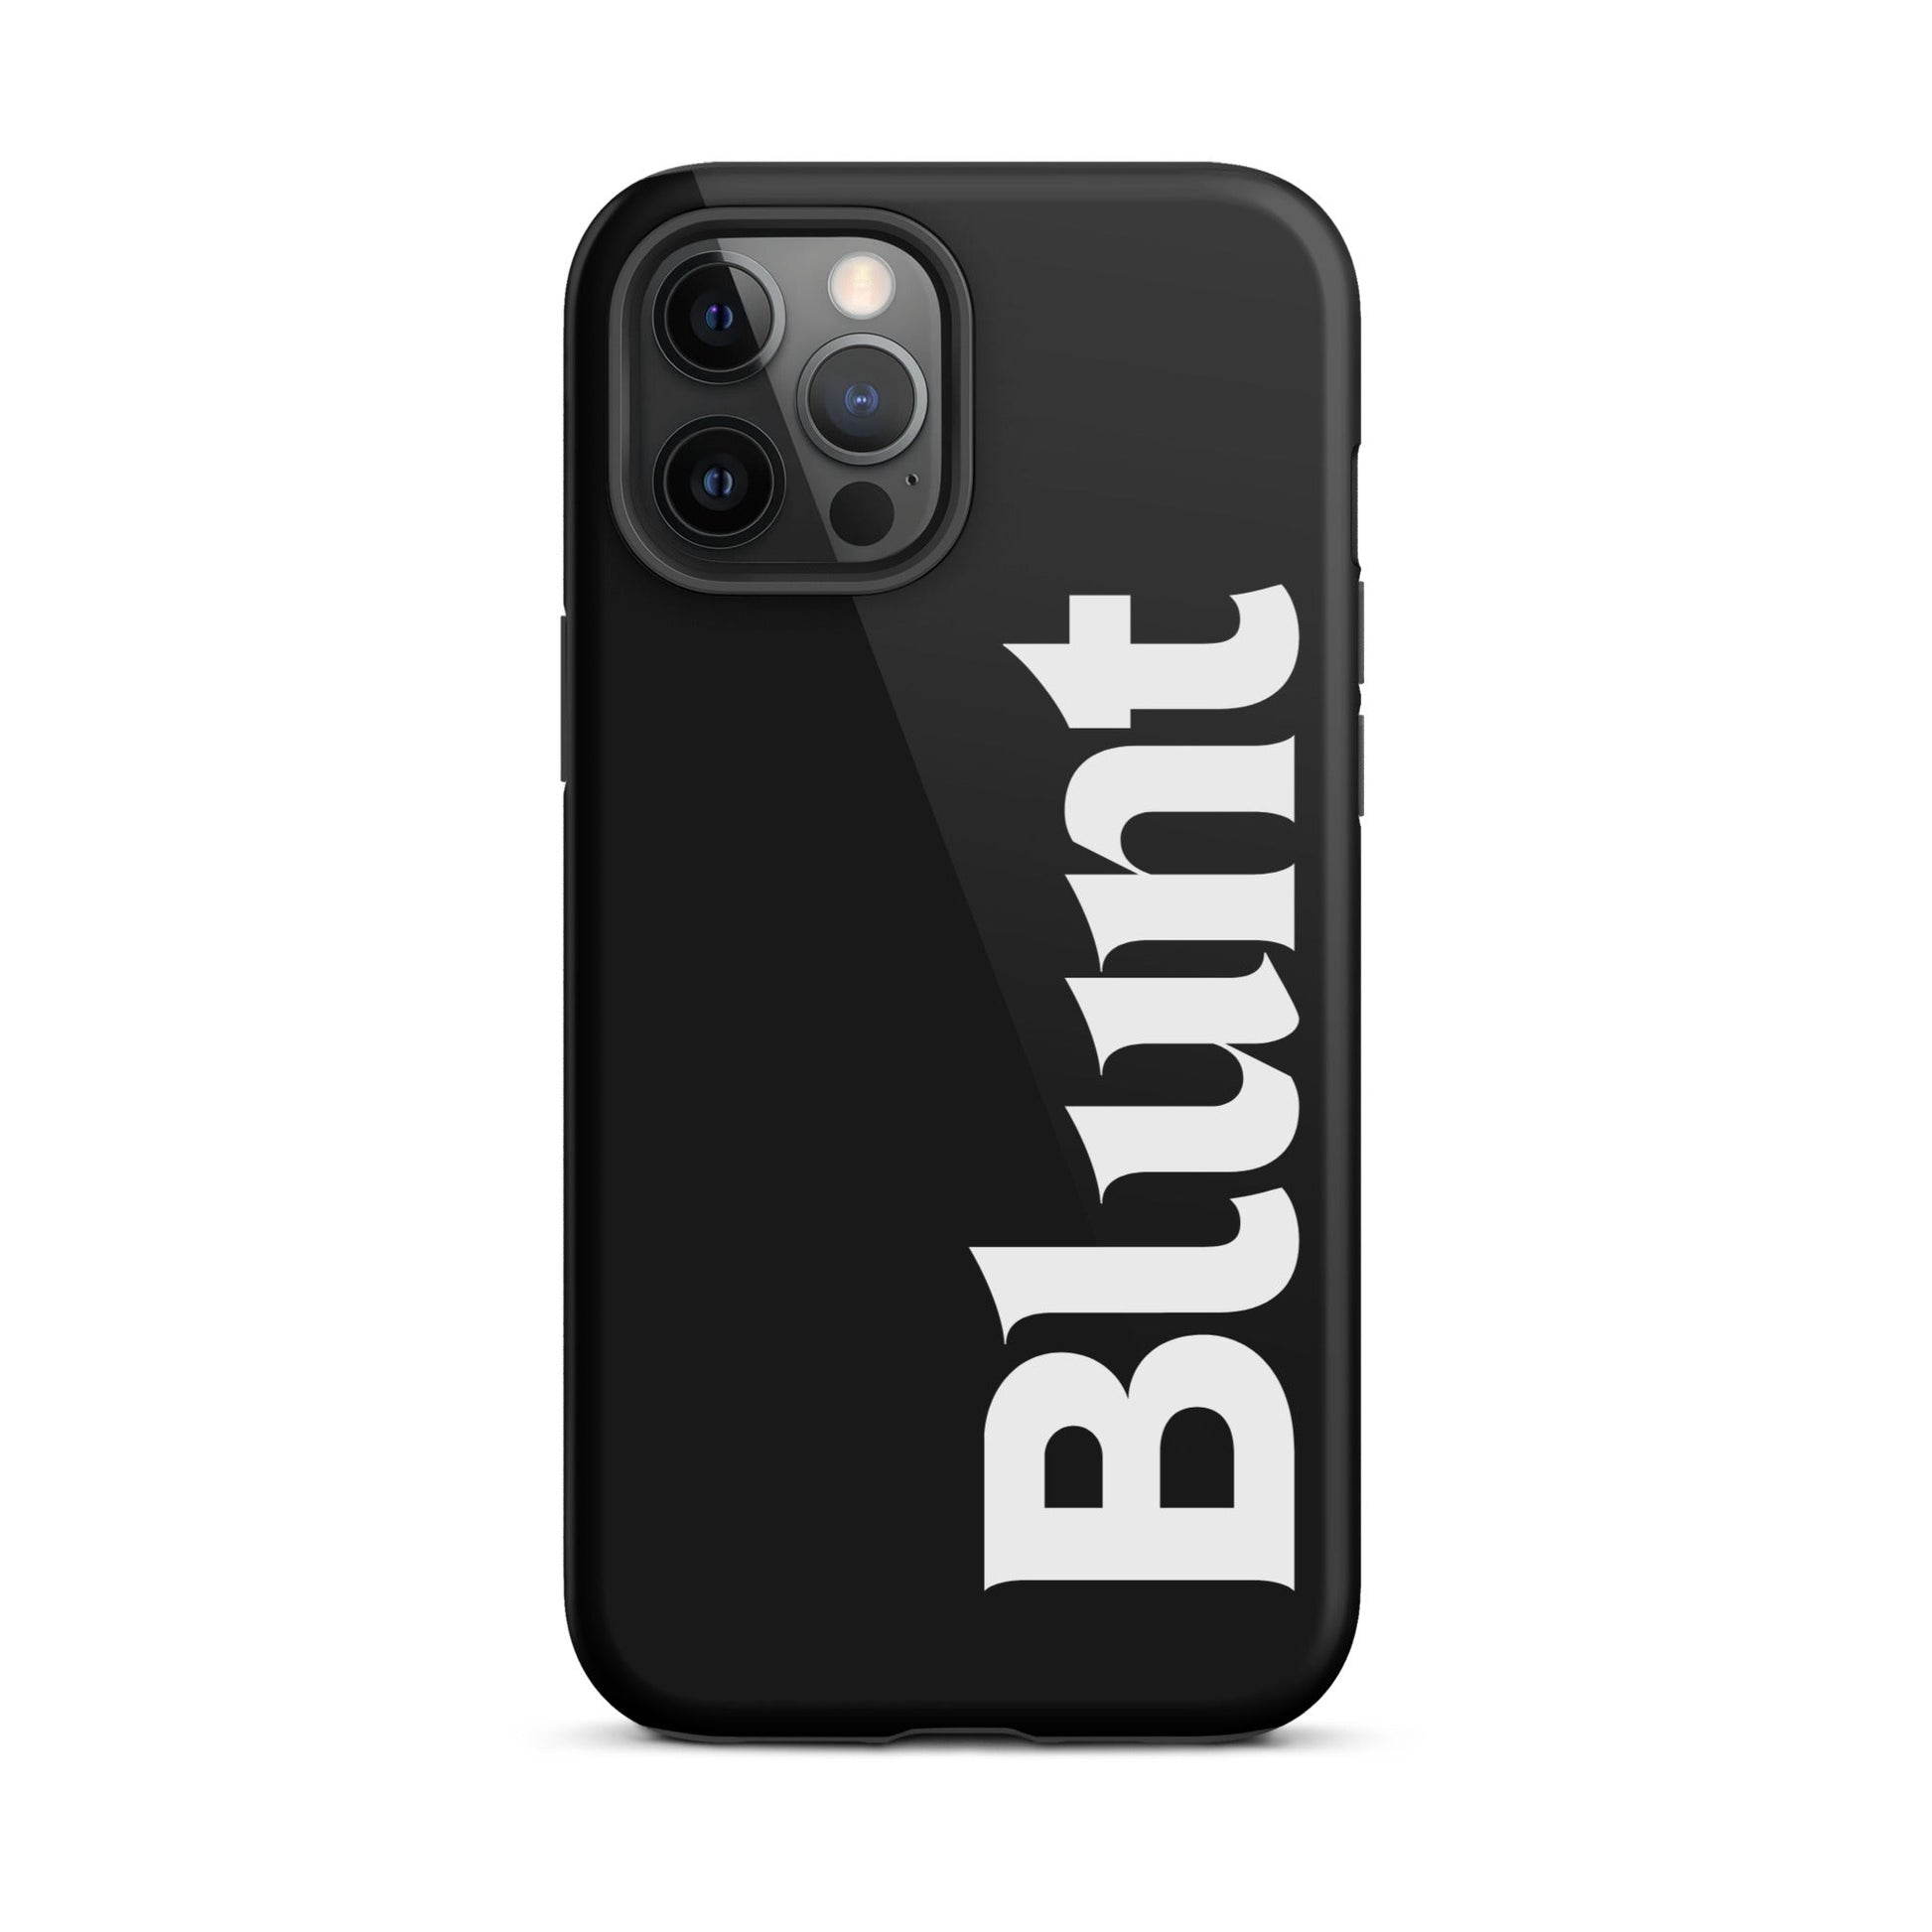 Blunt iPhone Case - blunt cases